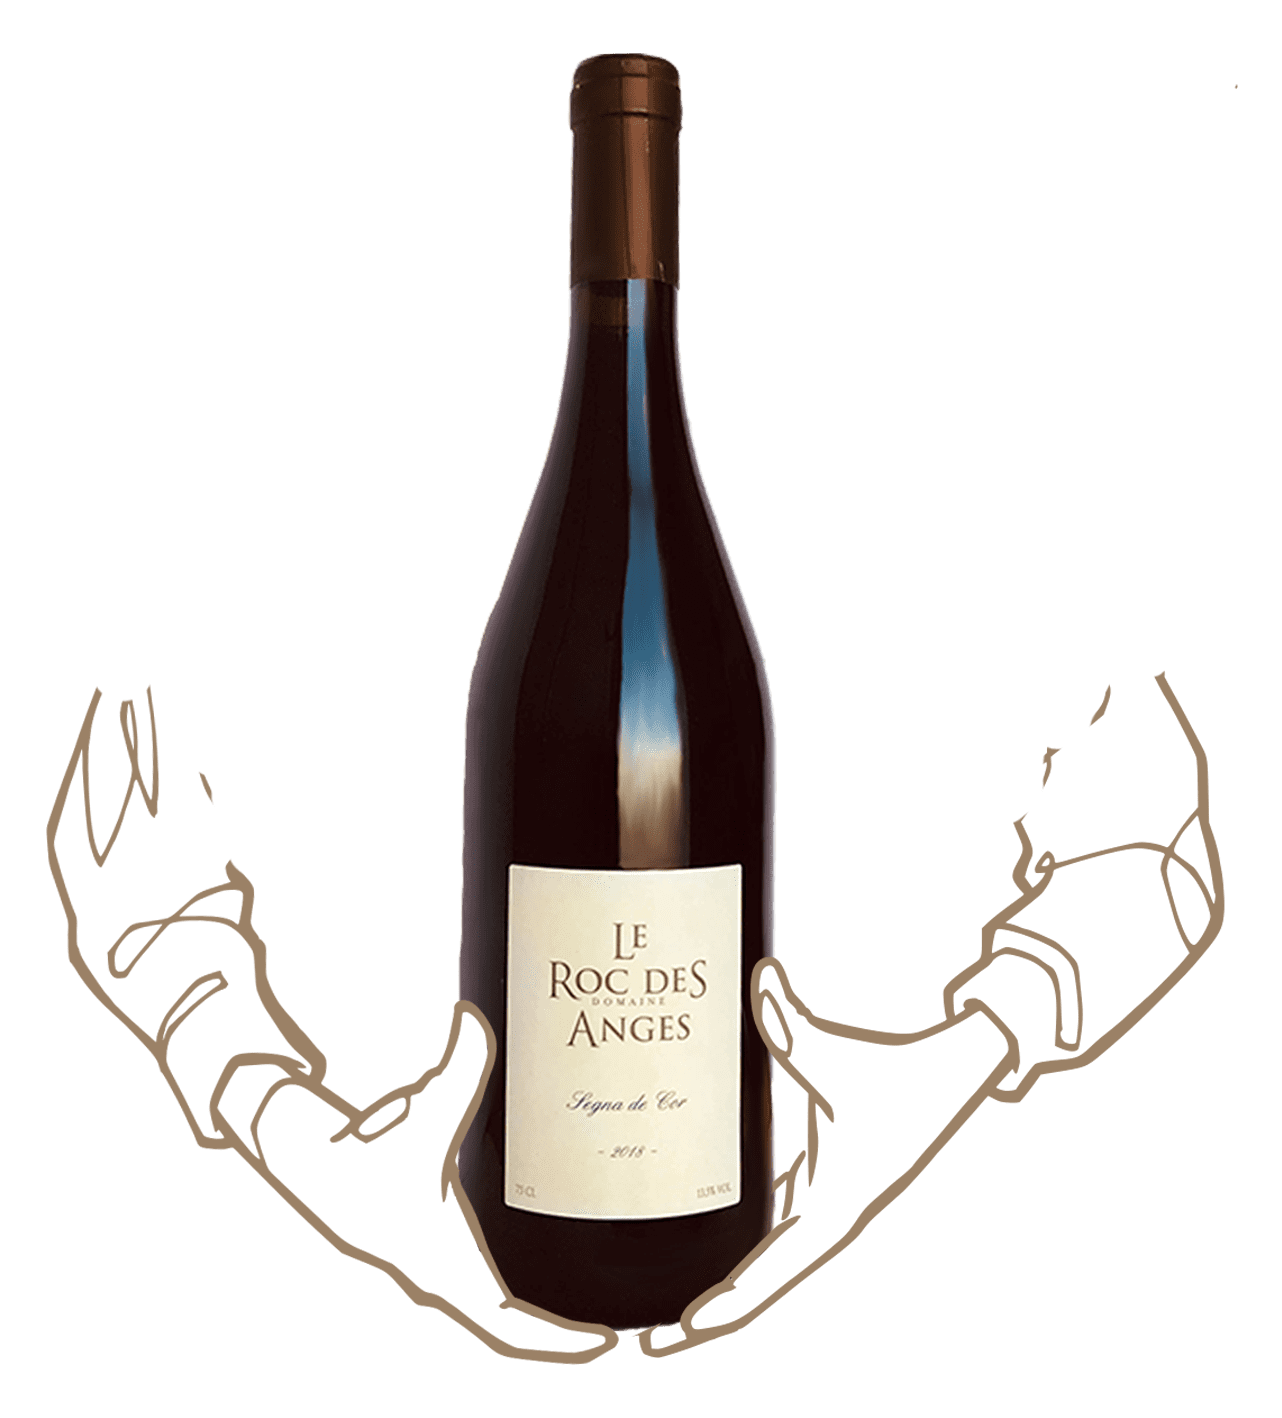 Segna de cor dby roc des anges is a biodynamic wine